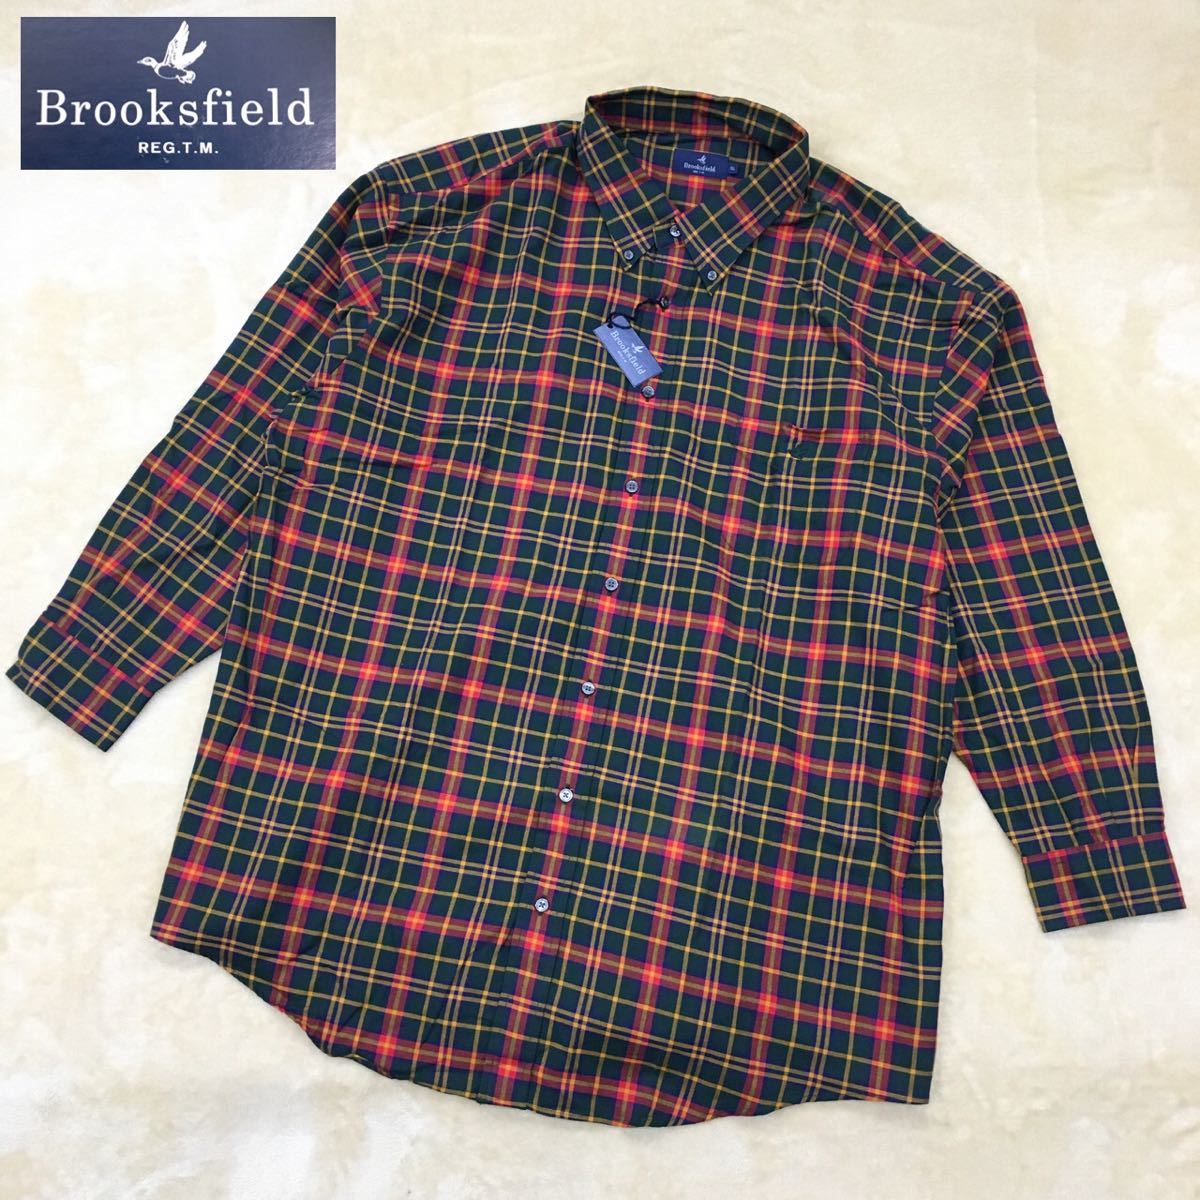 Brooks field ブルックスフィールド 長袖チェックシャツ メンズ 大きいサイズ 5L タグ付き未使用 デッドストック_画像1